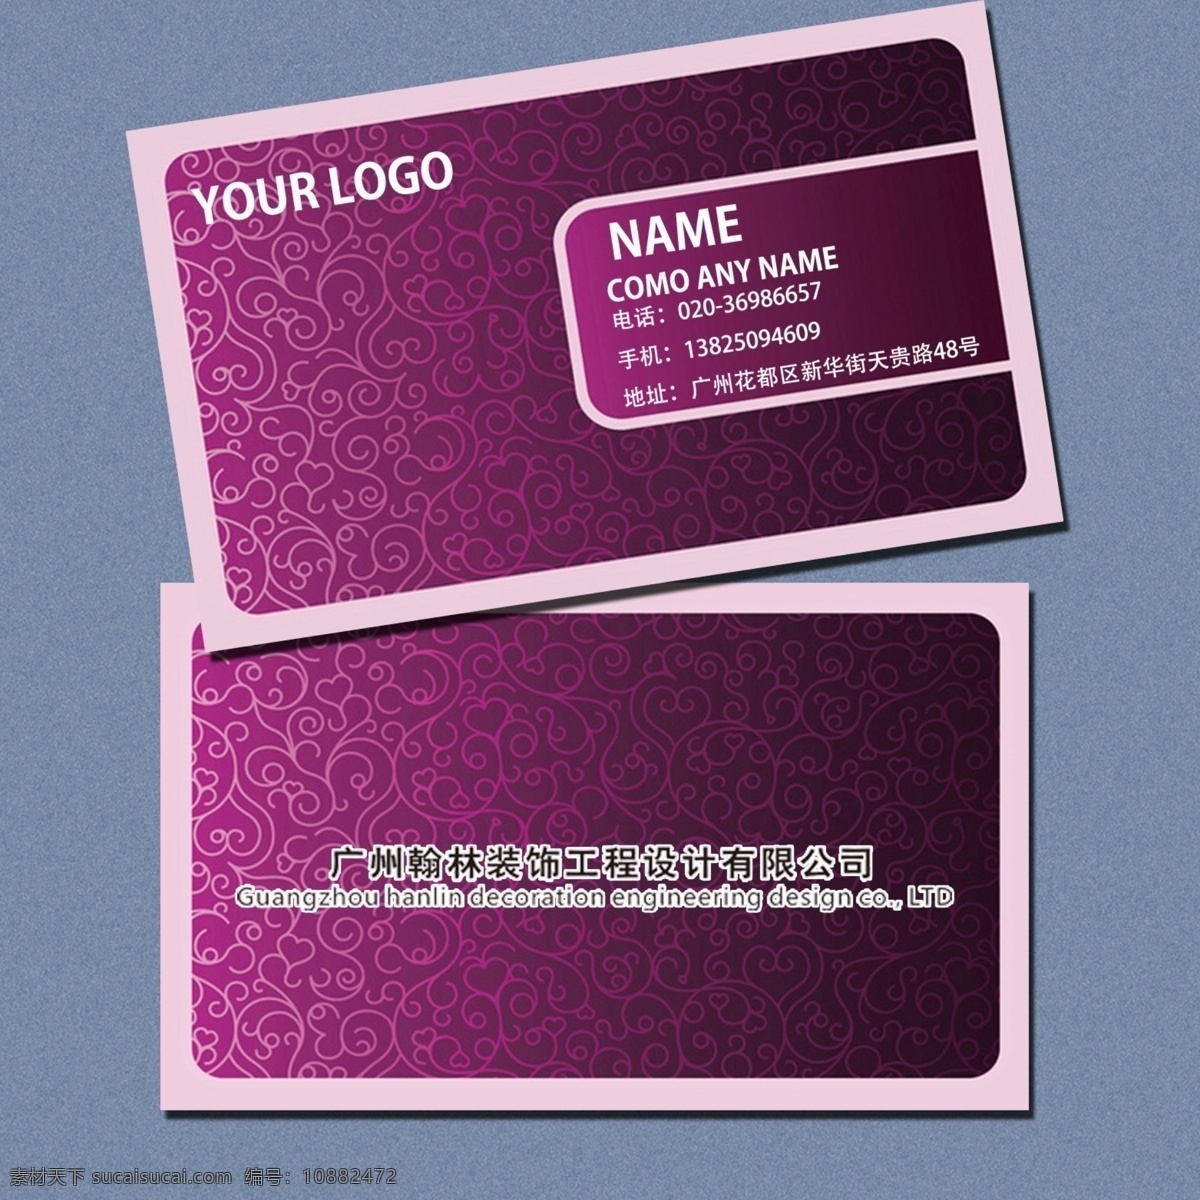 名片设计 紫金格式 高贵优雅 美容院名片 化妆品名片 夜店名片 名片 名片卡片